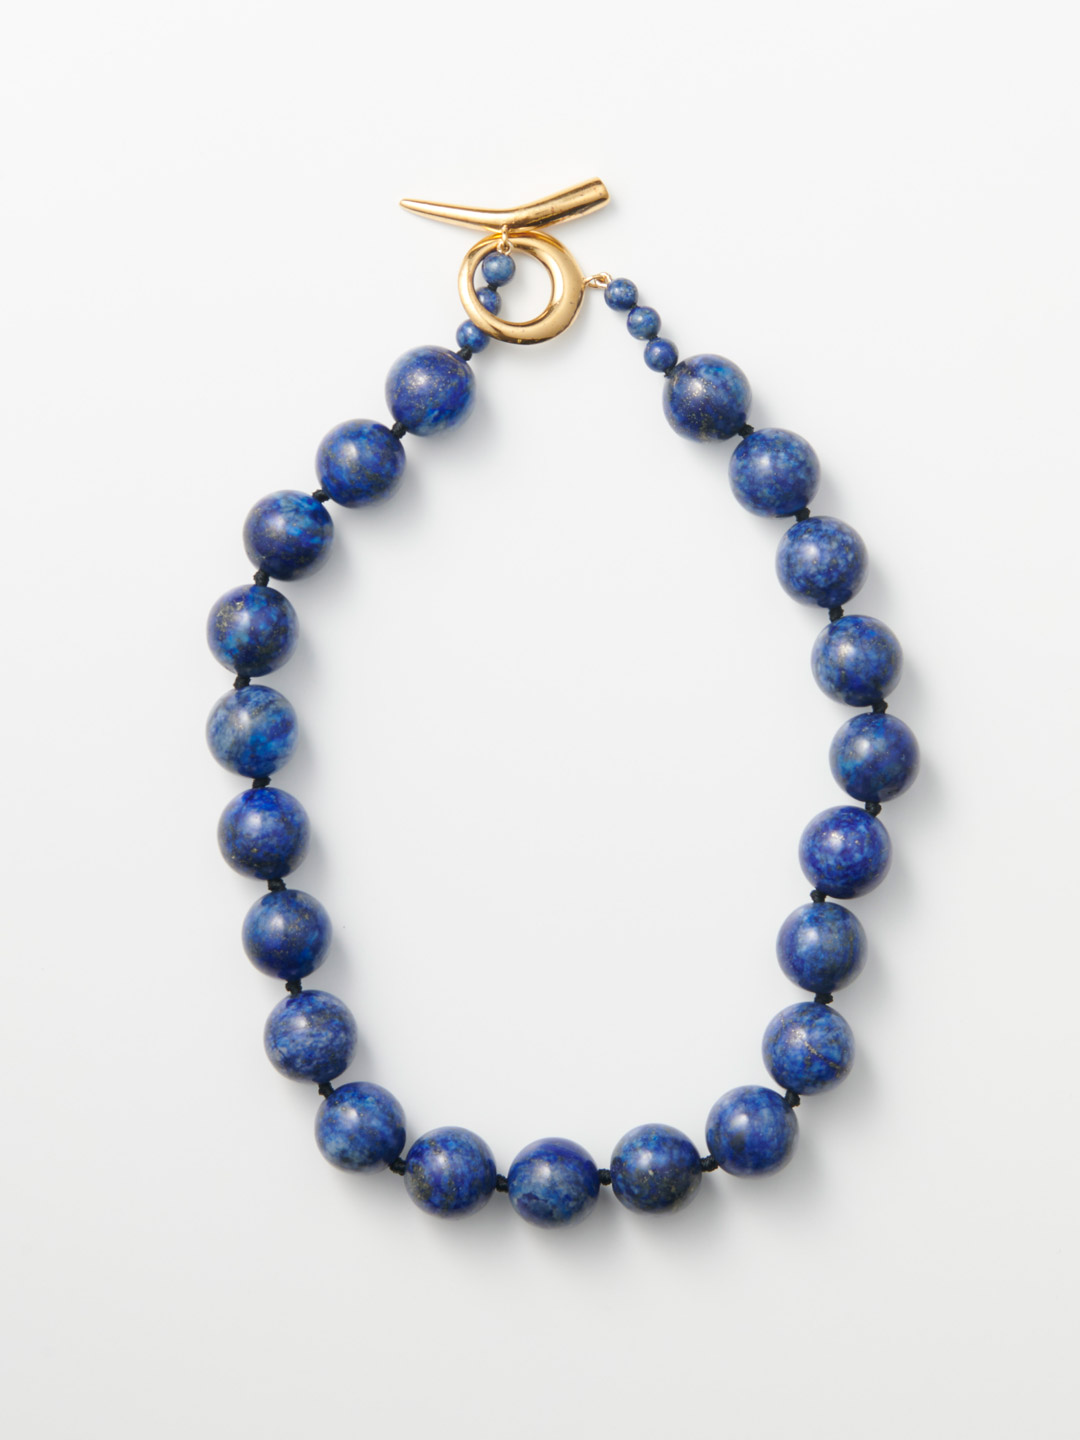 Medium Lapis Collar Necklace - Gold